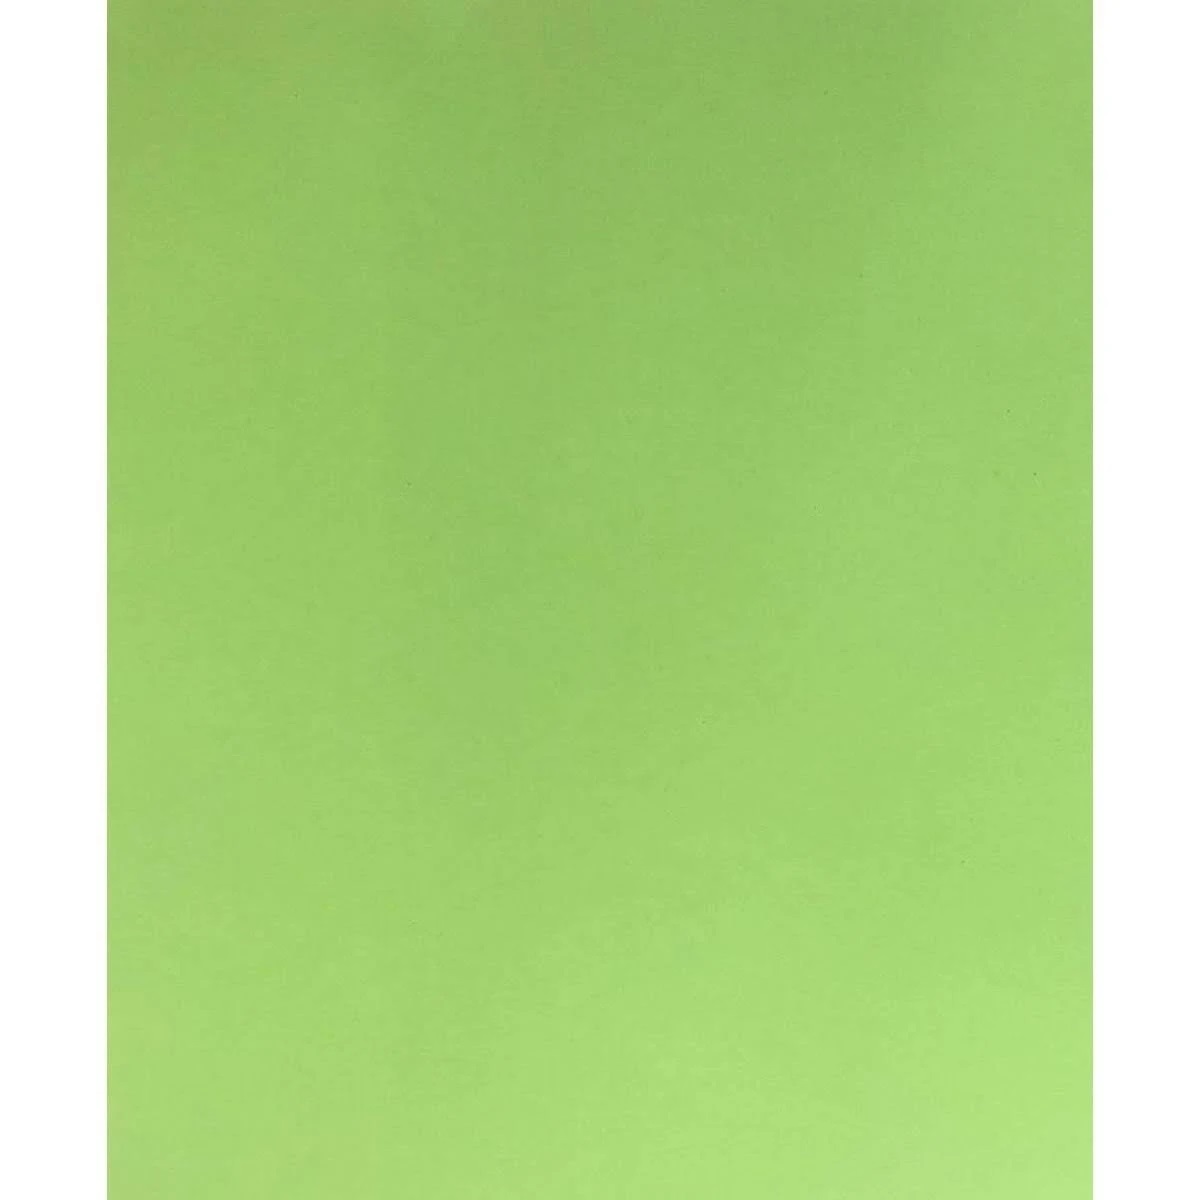 Placa De Eva 40cm X 60cm Liso Verde Limão Papelaria Criativa 8081